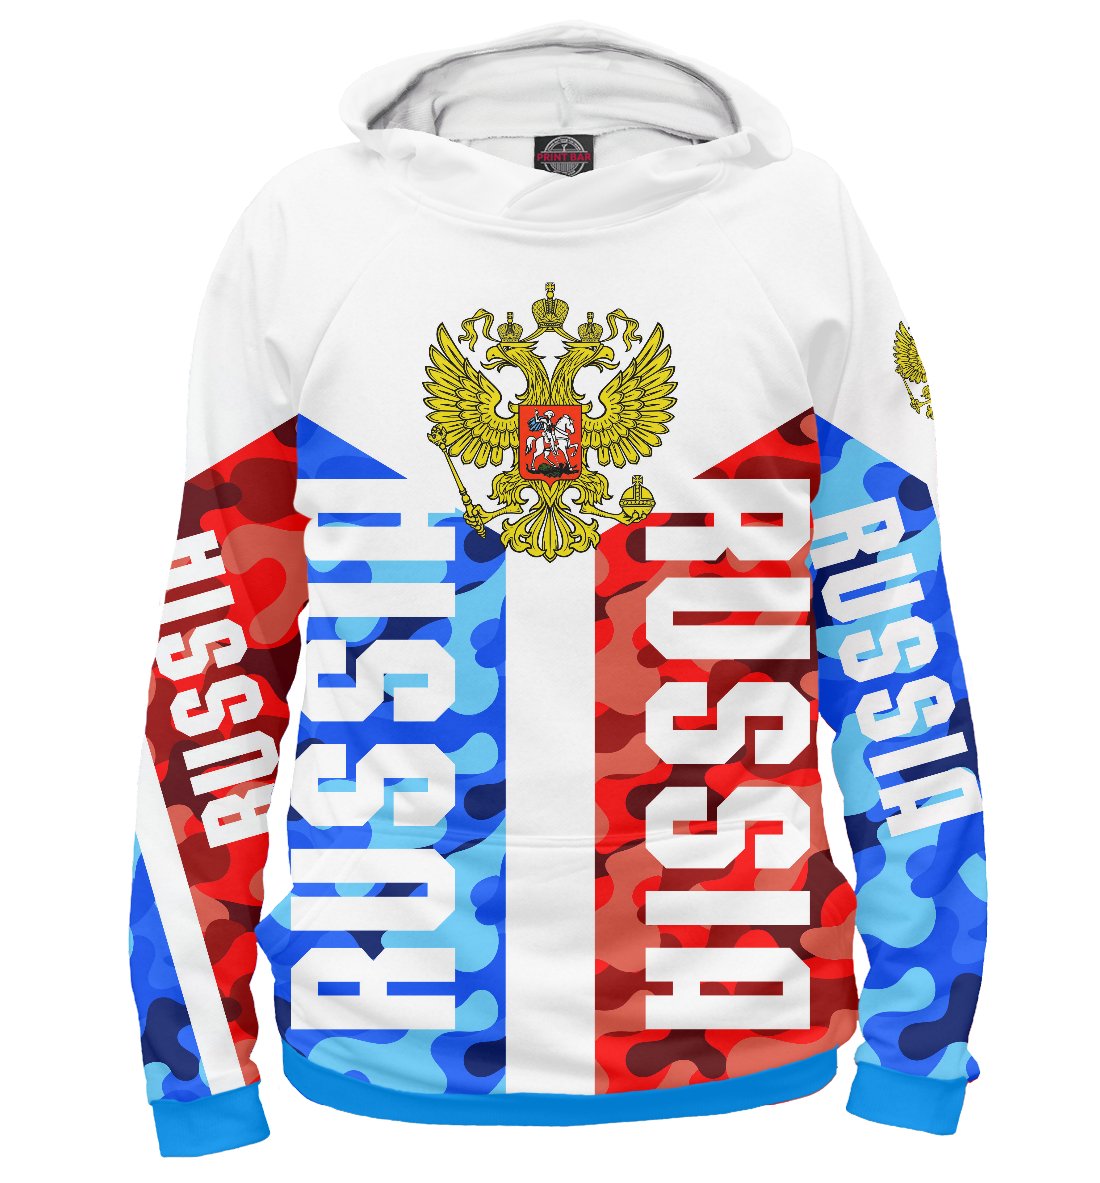 Одежда с надписью Russia